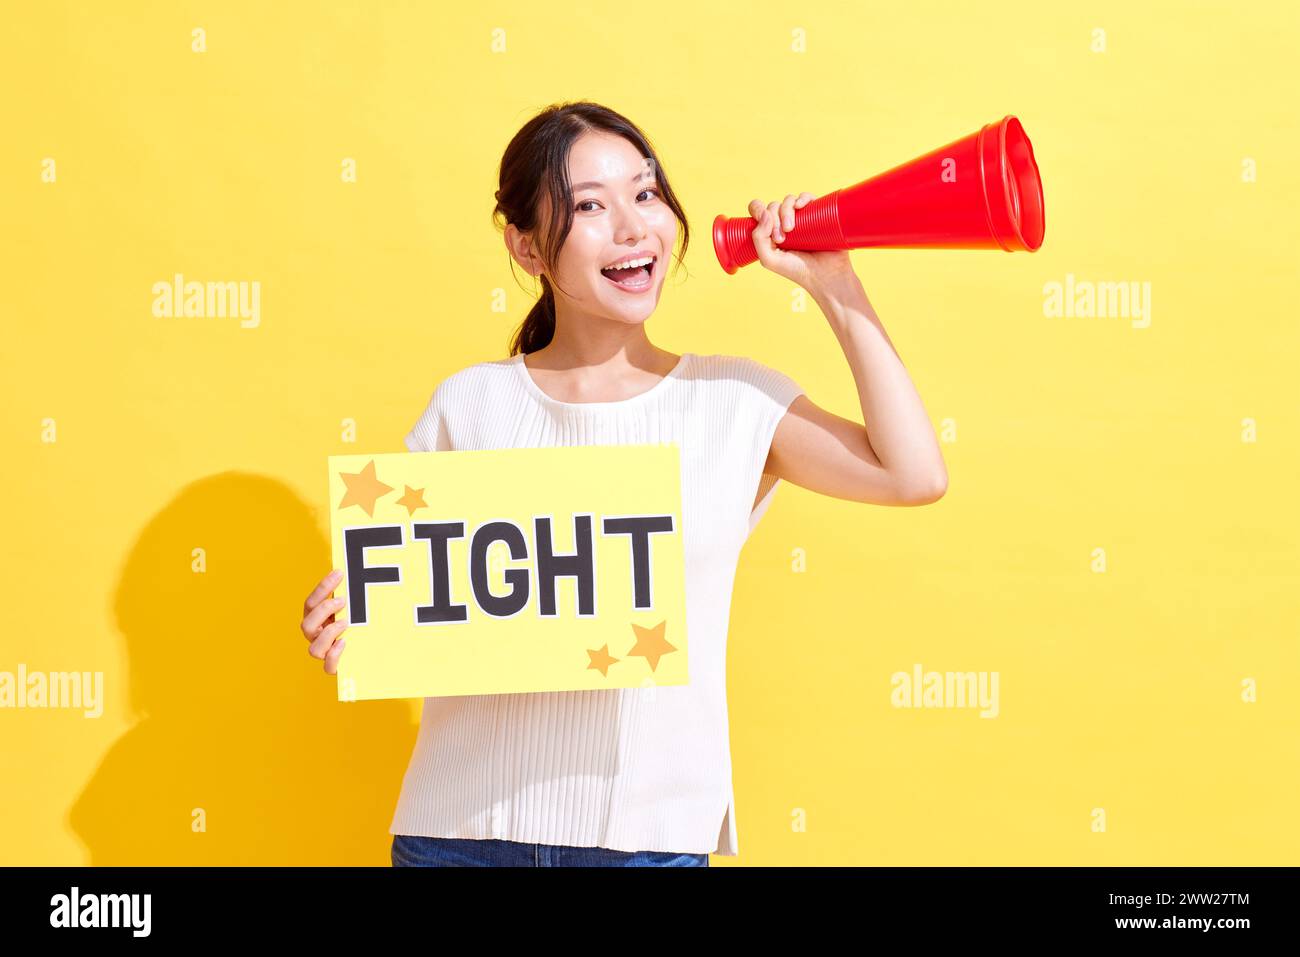 Femme tenant un signe de combat et criant dans un mégaphone Banque D'Images